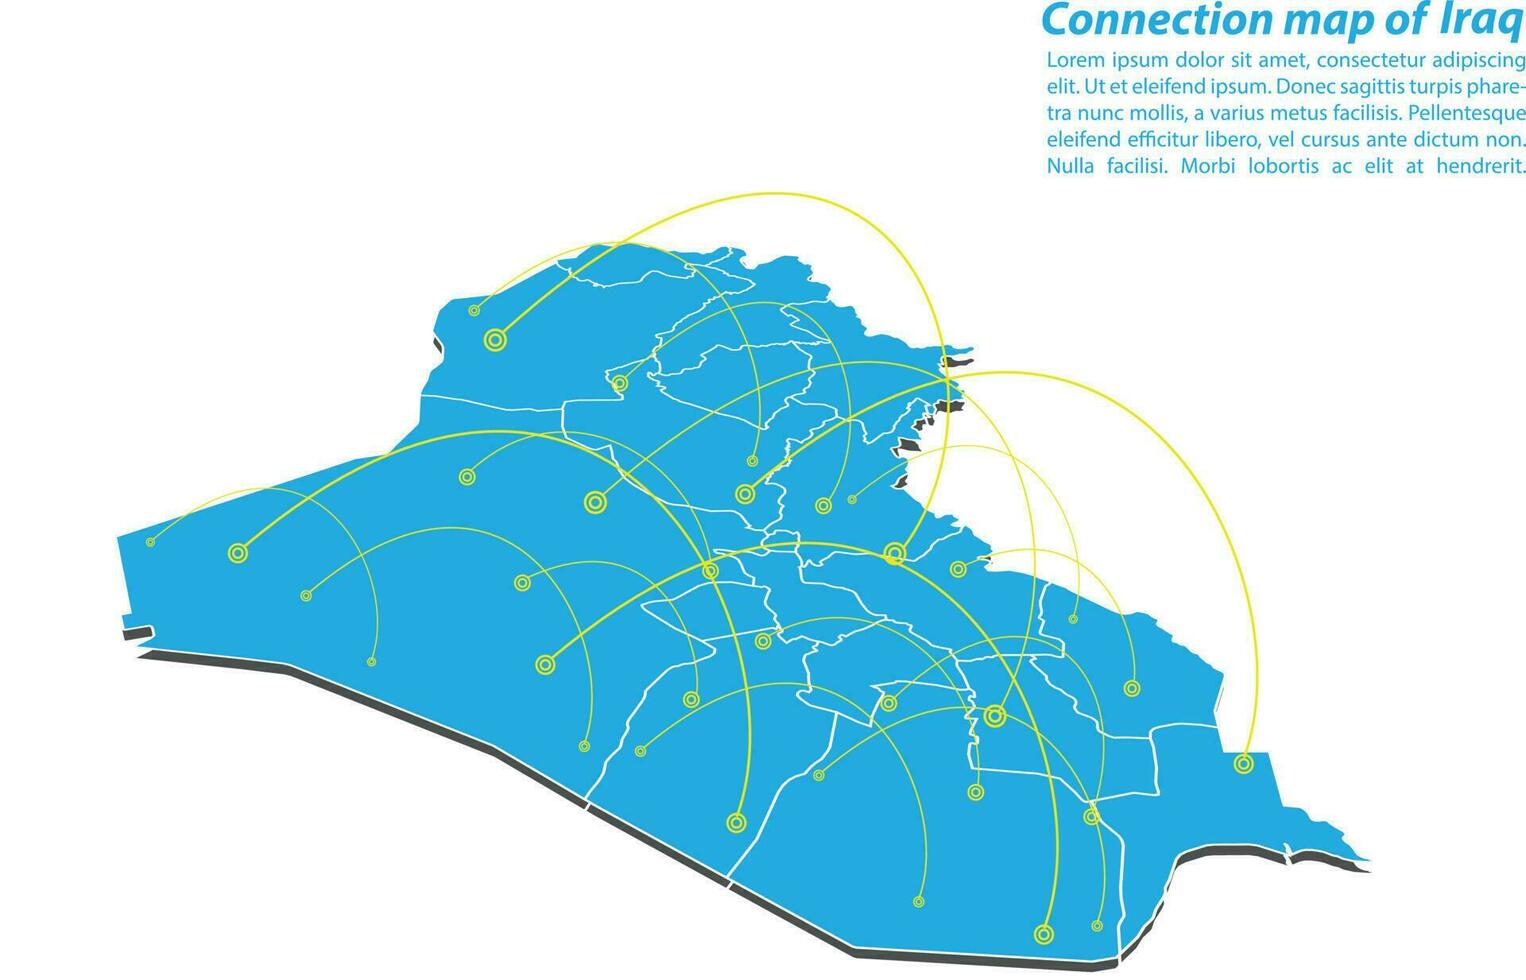 moderno do design de rede de conexões de mapa do iraque, melhor conceito de internet do negócio de mapa do iraque da série de conceitos, ponto de mapa e composição de linha. mapa infográfico. ilustração vetorial. vetor